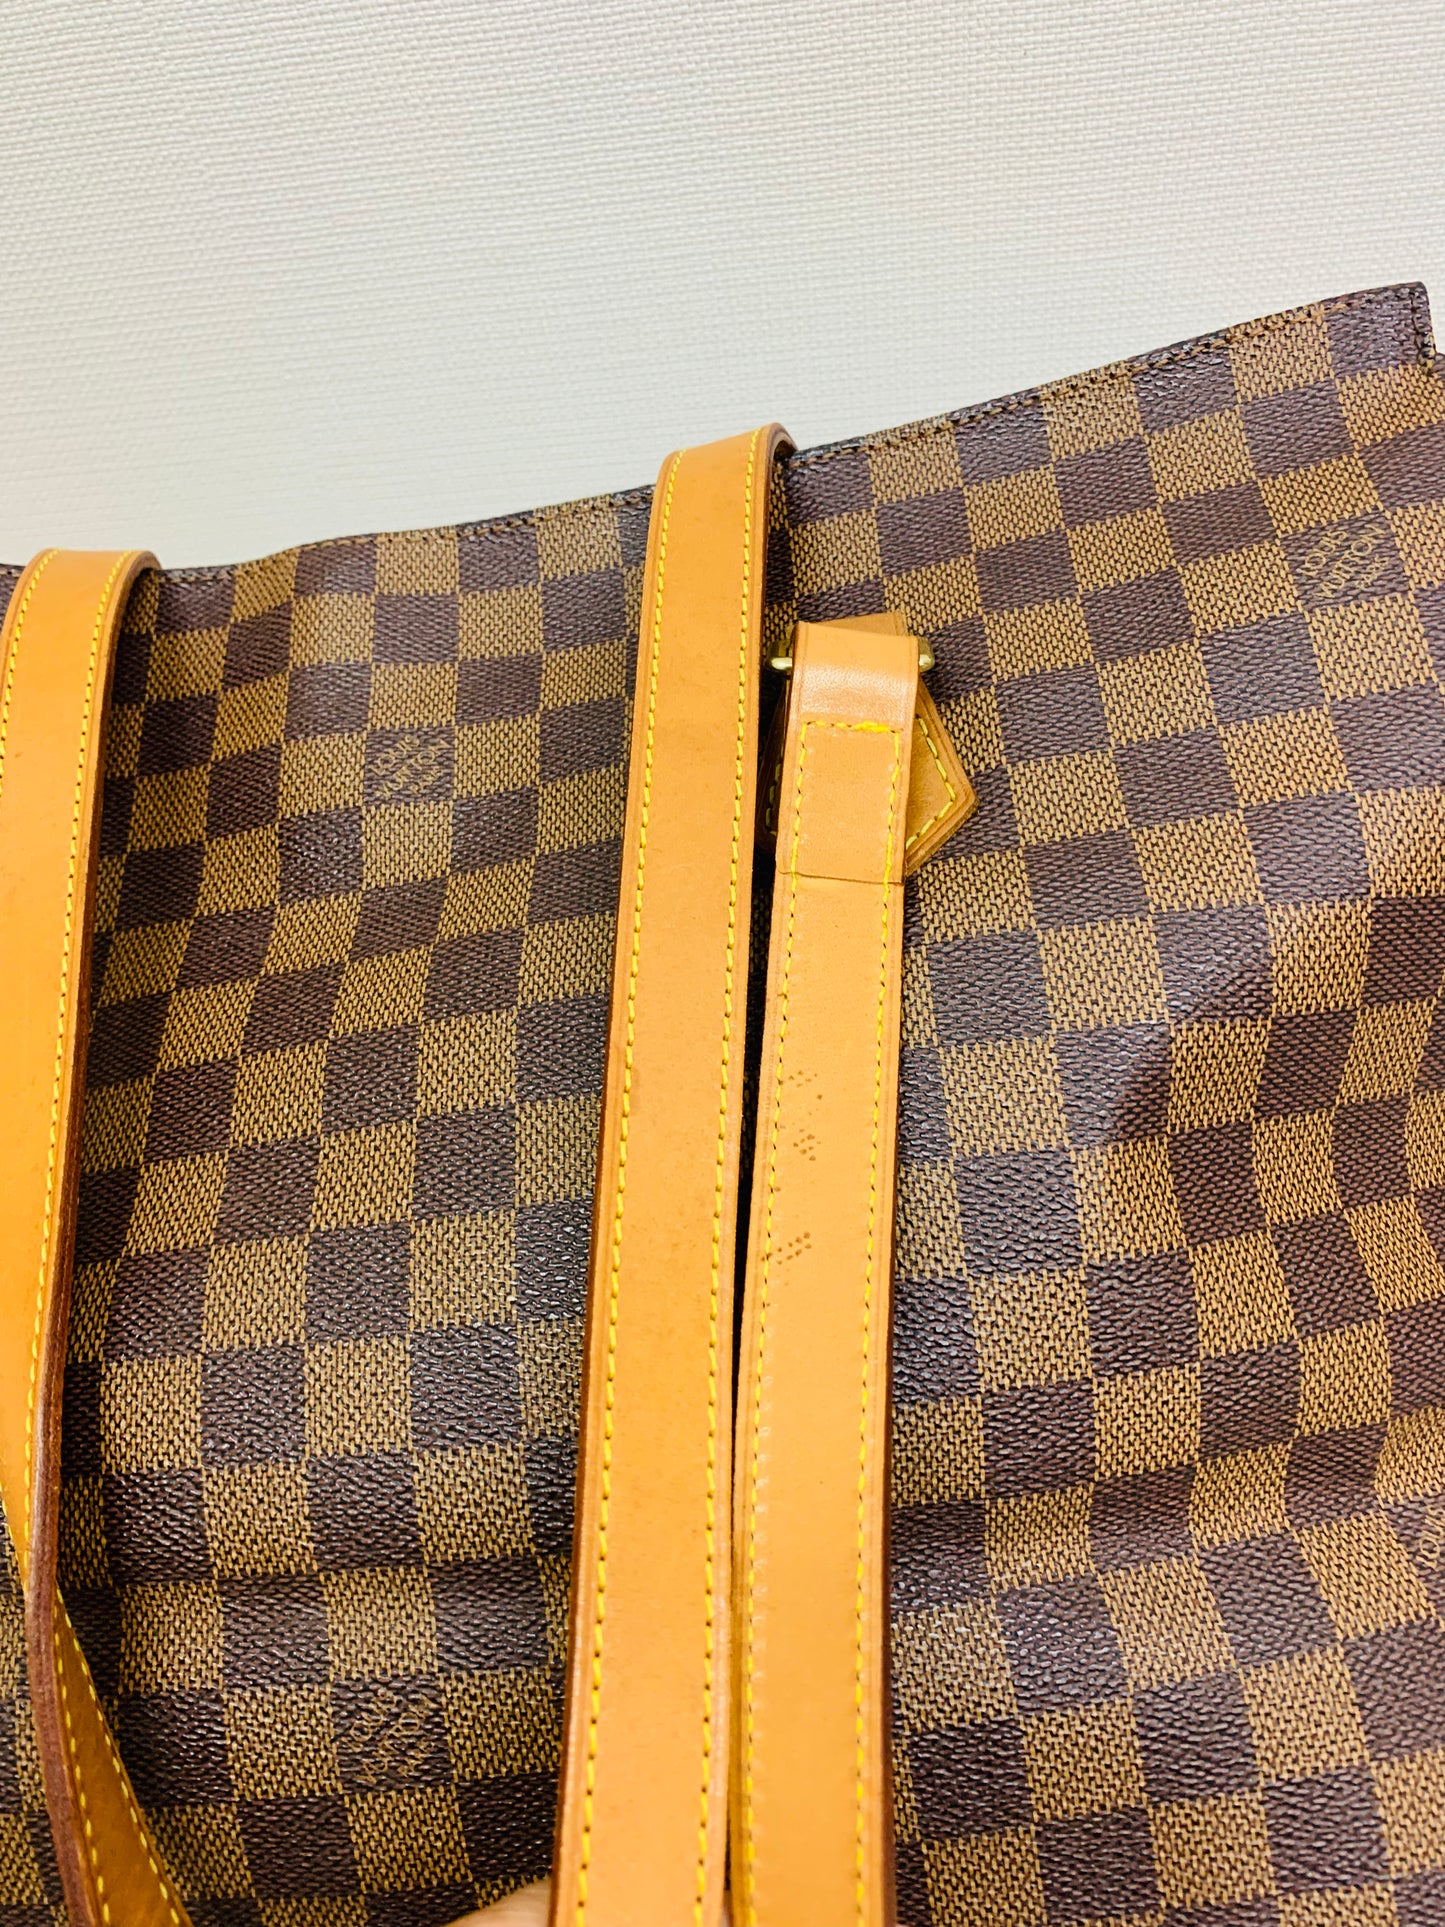 Authentic Louis Vuitton Columbine Centenaire Damier Tote bag